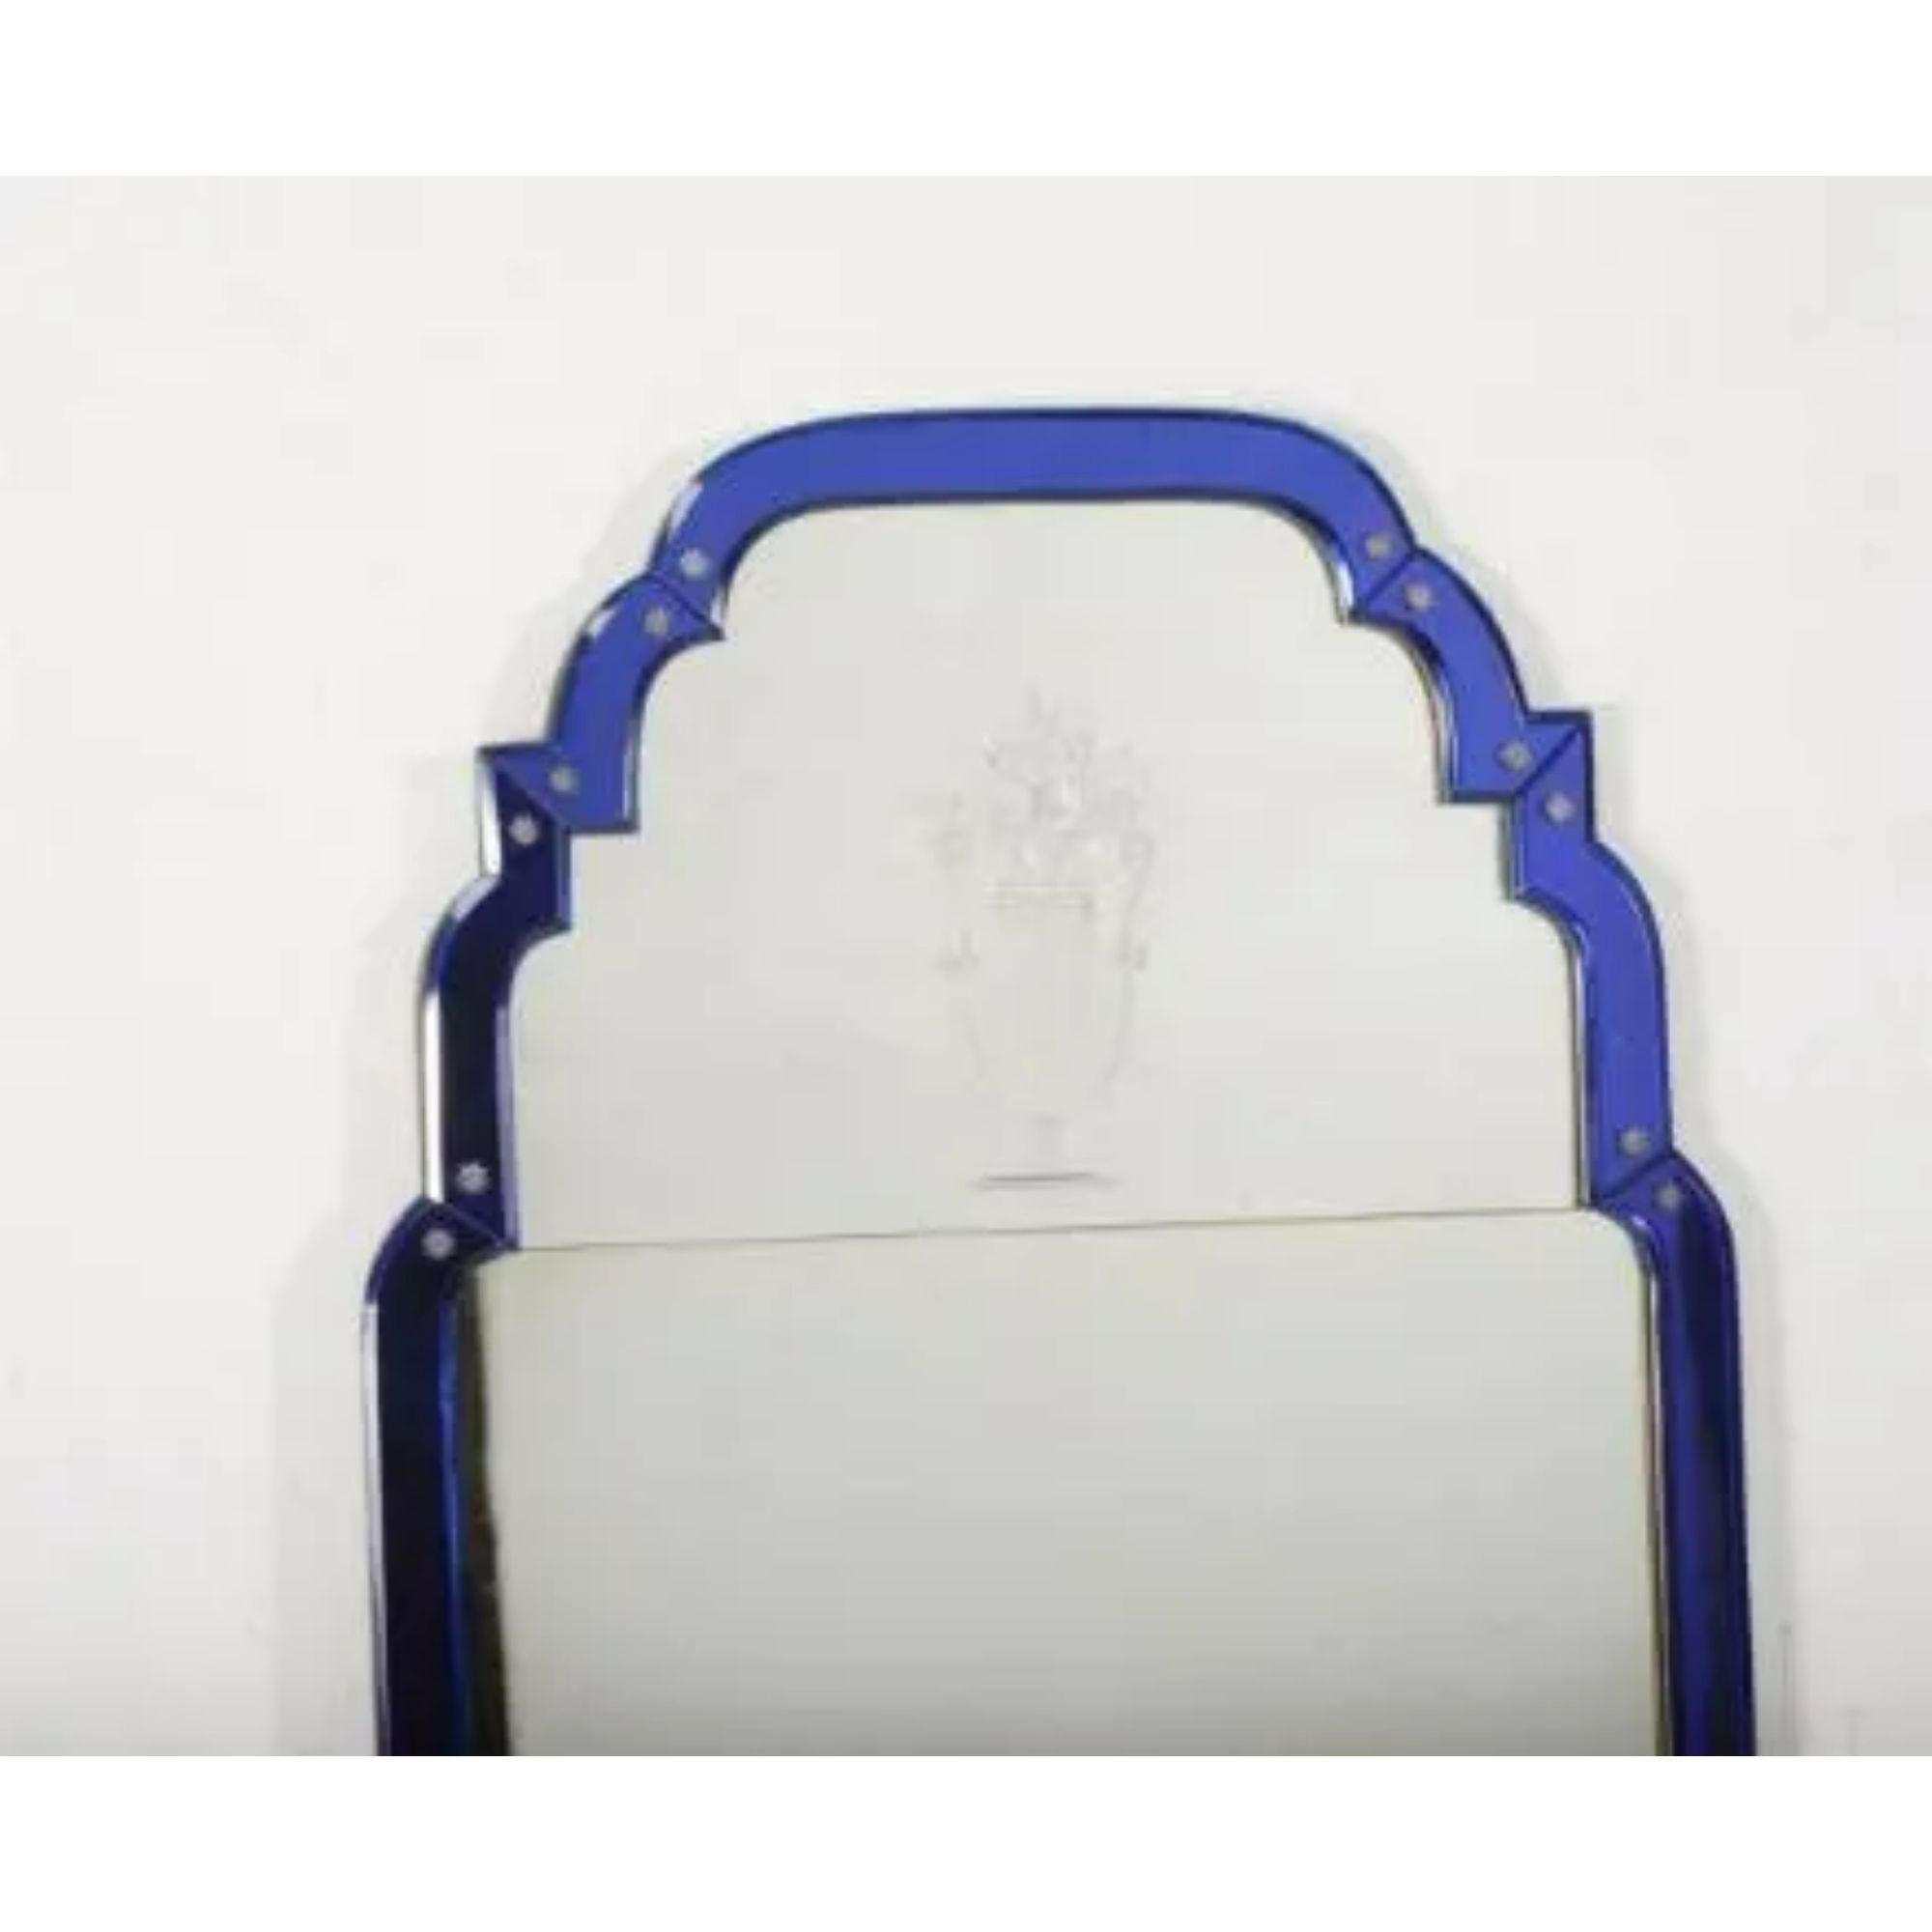 Miroir Pier encadré de verre bleu

Dimensions : 101 x 57 cm